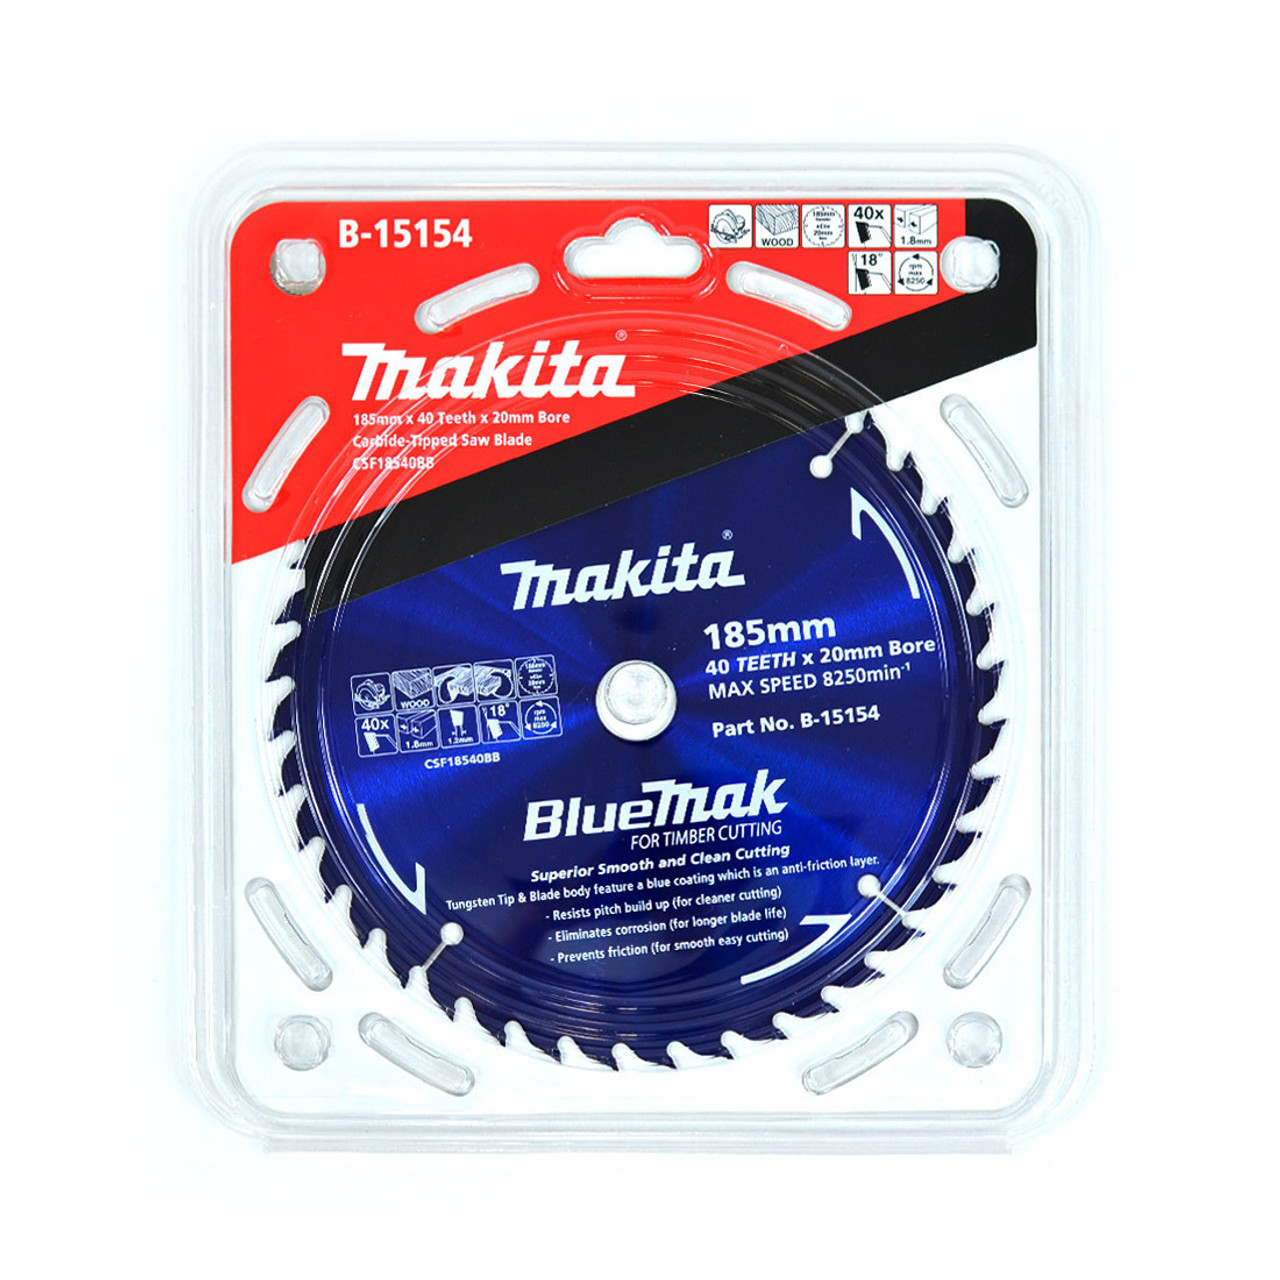 Makita B-15154 BlueMak 185mm (7-1/4